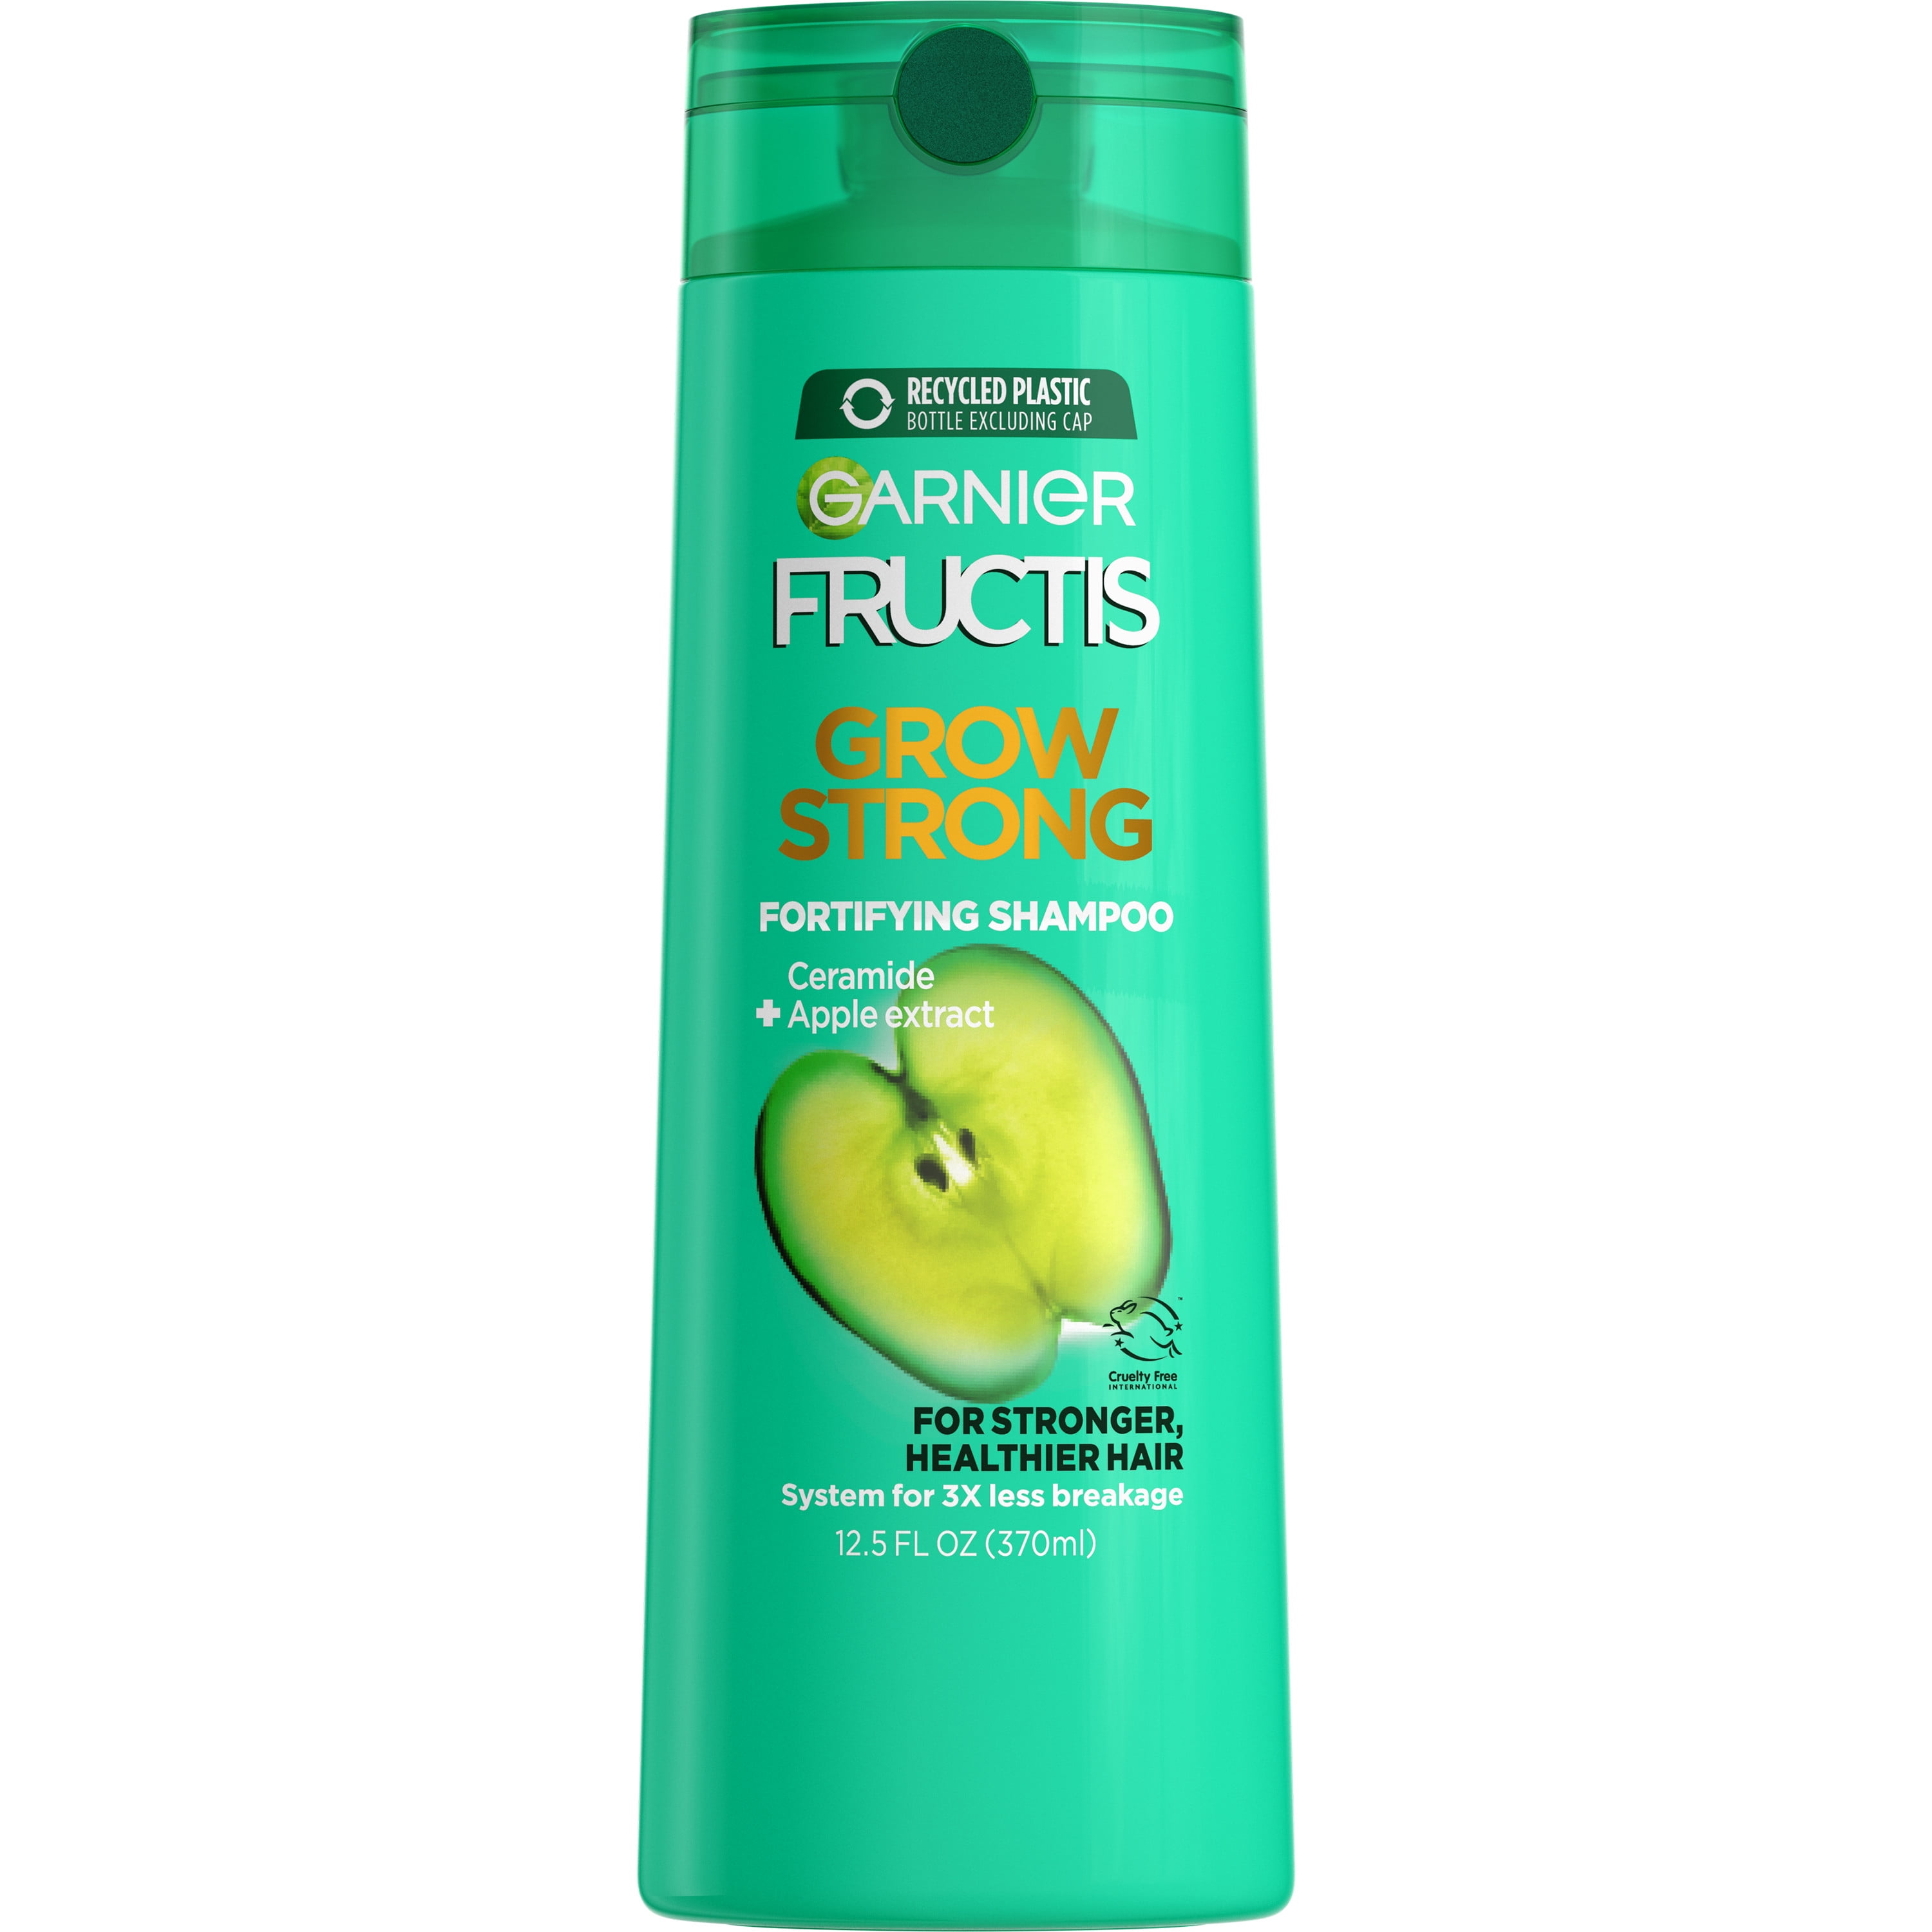 Garnier Fructis Grow Strong Shampoo, For Stronger, Healthier, Shinier Hair, 12.5 fl oz